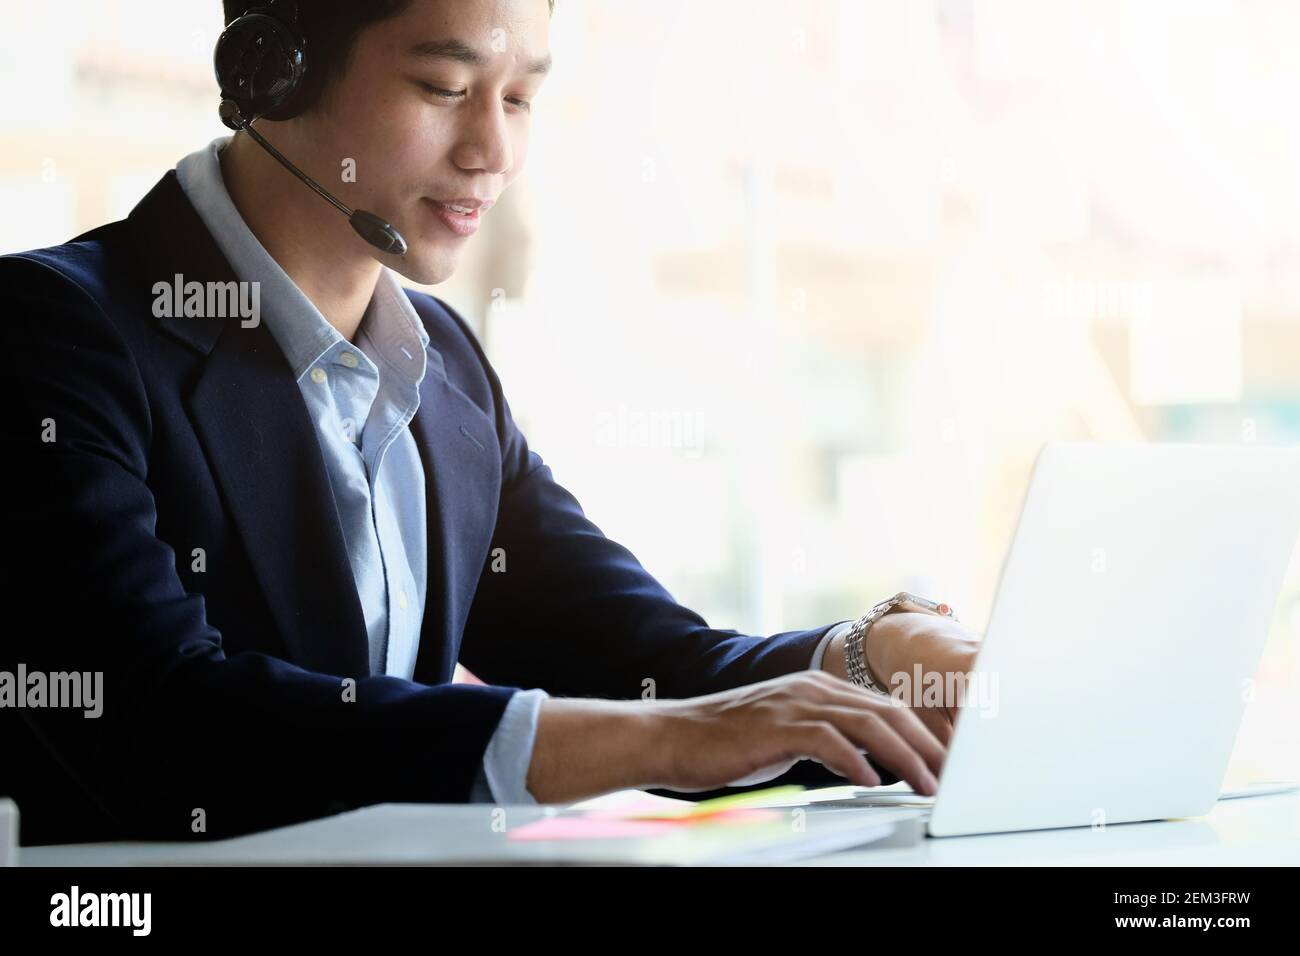 Uomo d'affari asiatico in cuffia che guarda il laptop, guarda un buon webinar, consulente del cliente, imparare a distanza lingue, prendere appunti, uomo felice Foto Stock